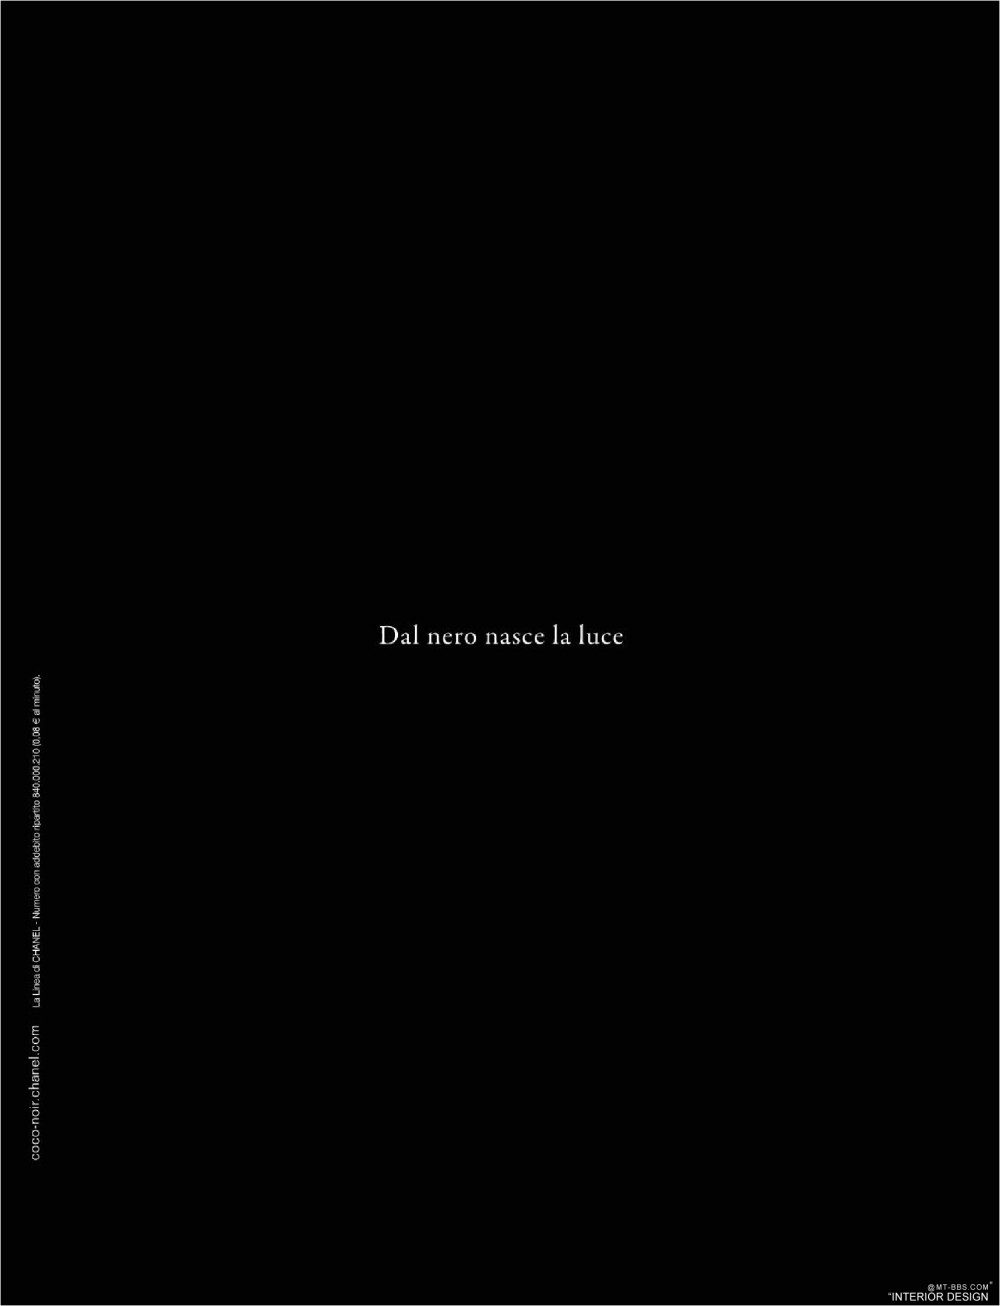 意大利AD 杂志 2012年全年JPG高清版本 全免（上传完毕）_0006.jpg